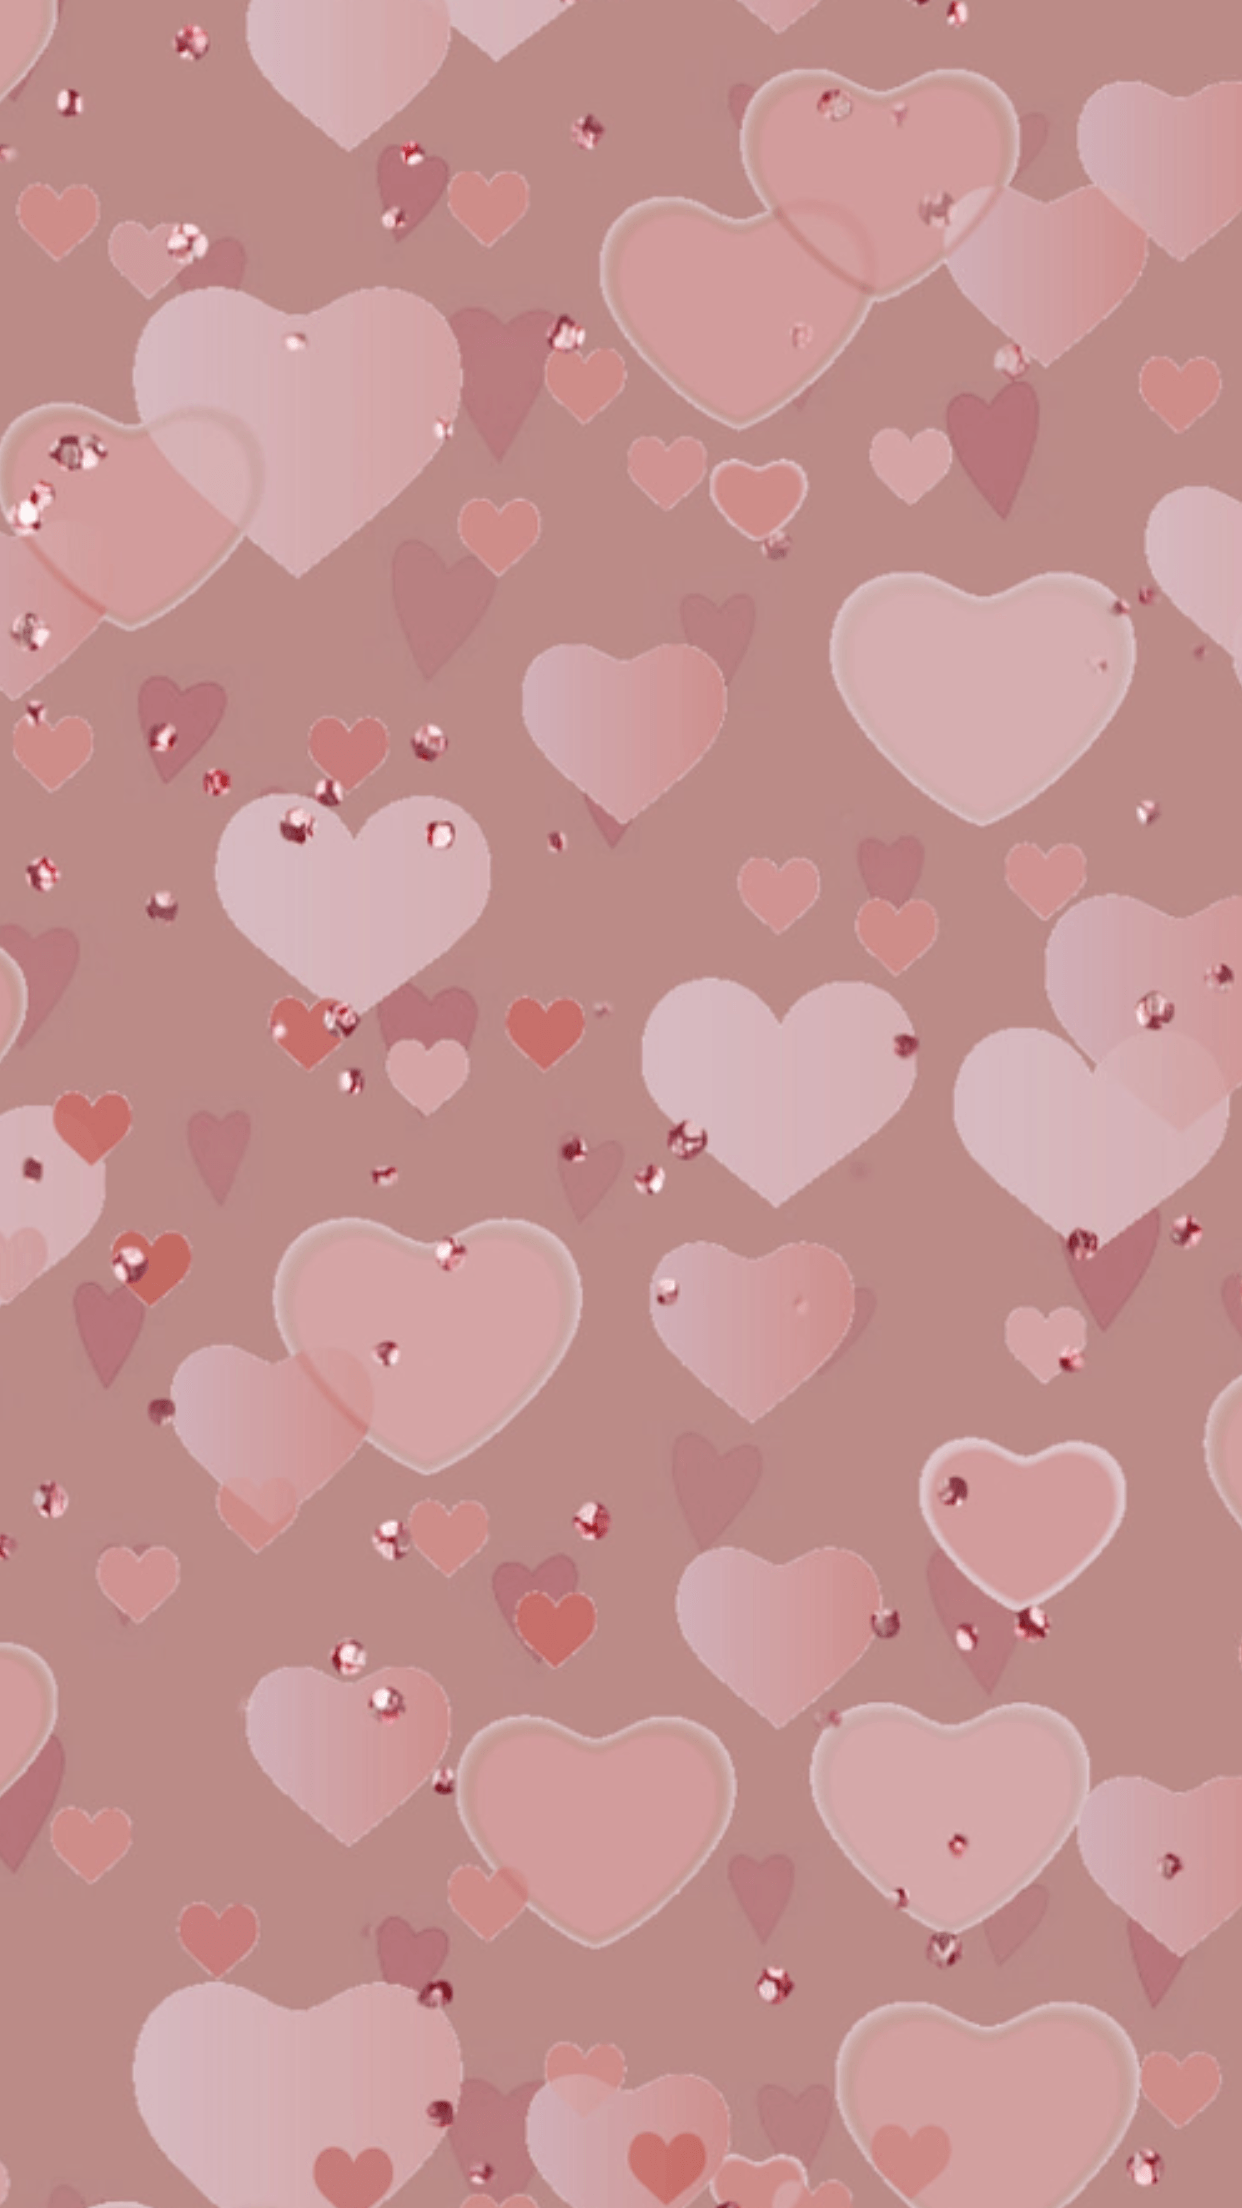 Pink heart wallpaper. Nature. Heart wallpaper, Wallpaper, iPhone